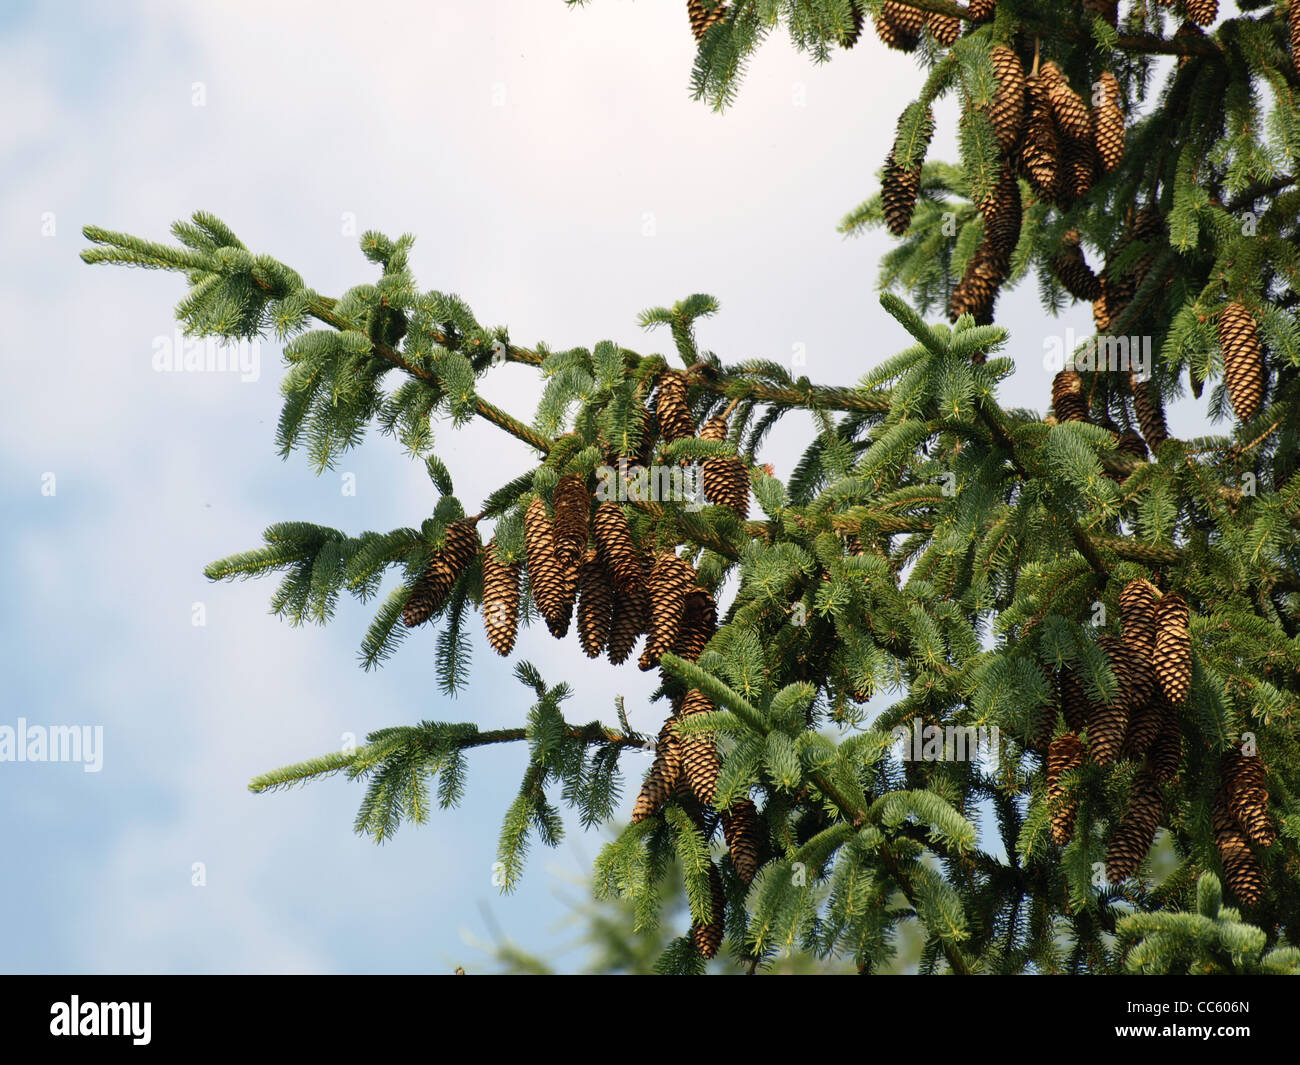 Norway spruce with cones / Picea abies / Gemeine Fichte mit Zapfen Stock Photo